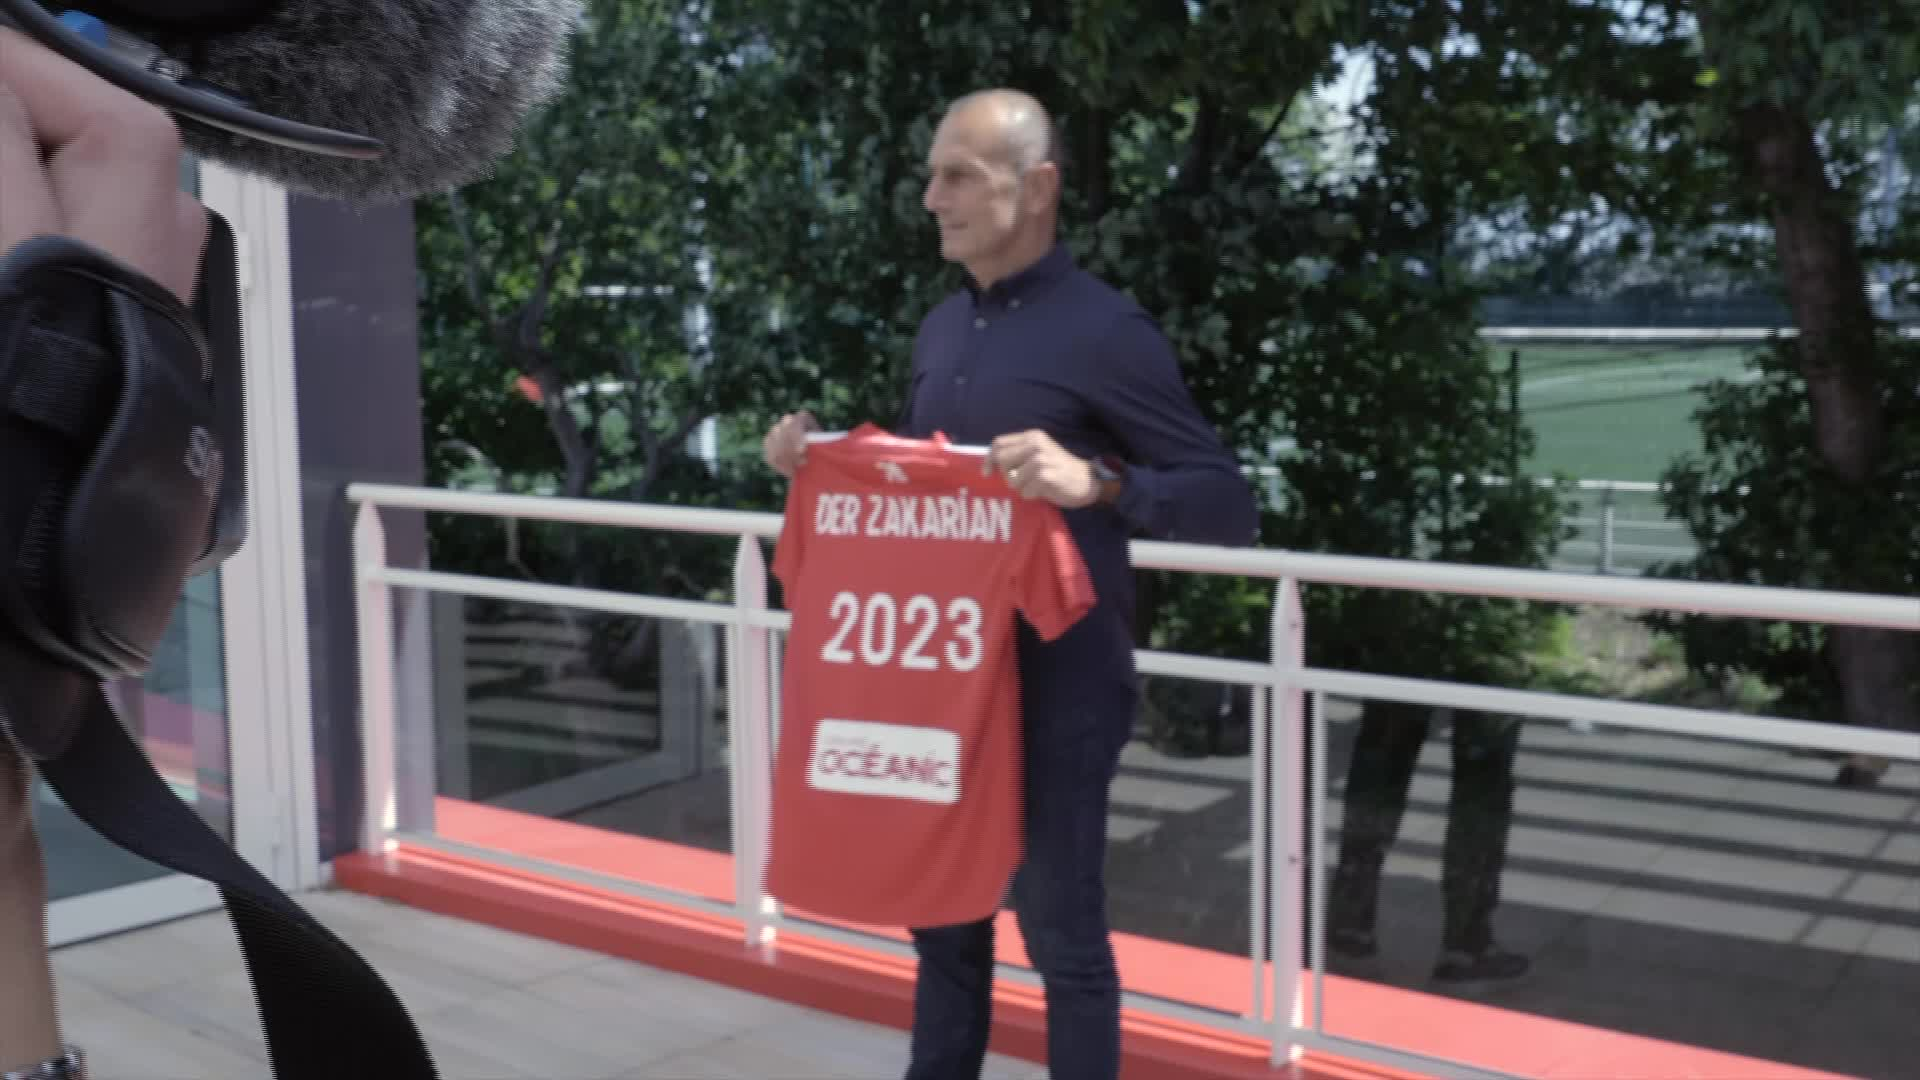 Der Zakarian, nouvel entraîneur du Stade Brestois (Tébéo-TébéSud)